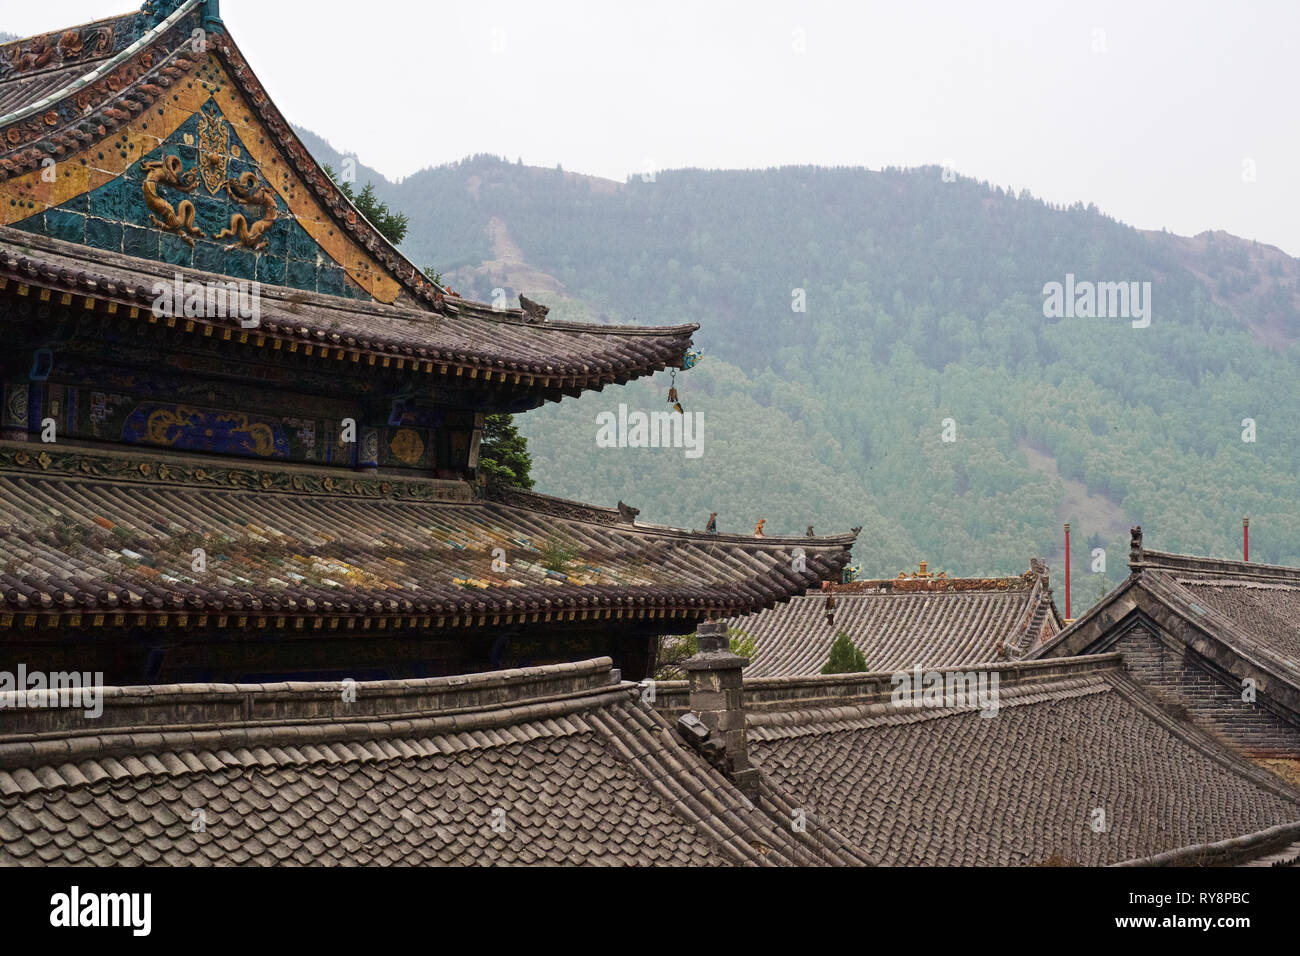 Chinese temple roof, Wutai Shan, Shanxi, China Stock Photo